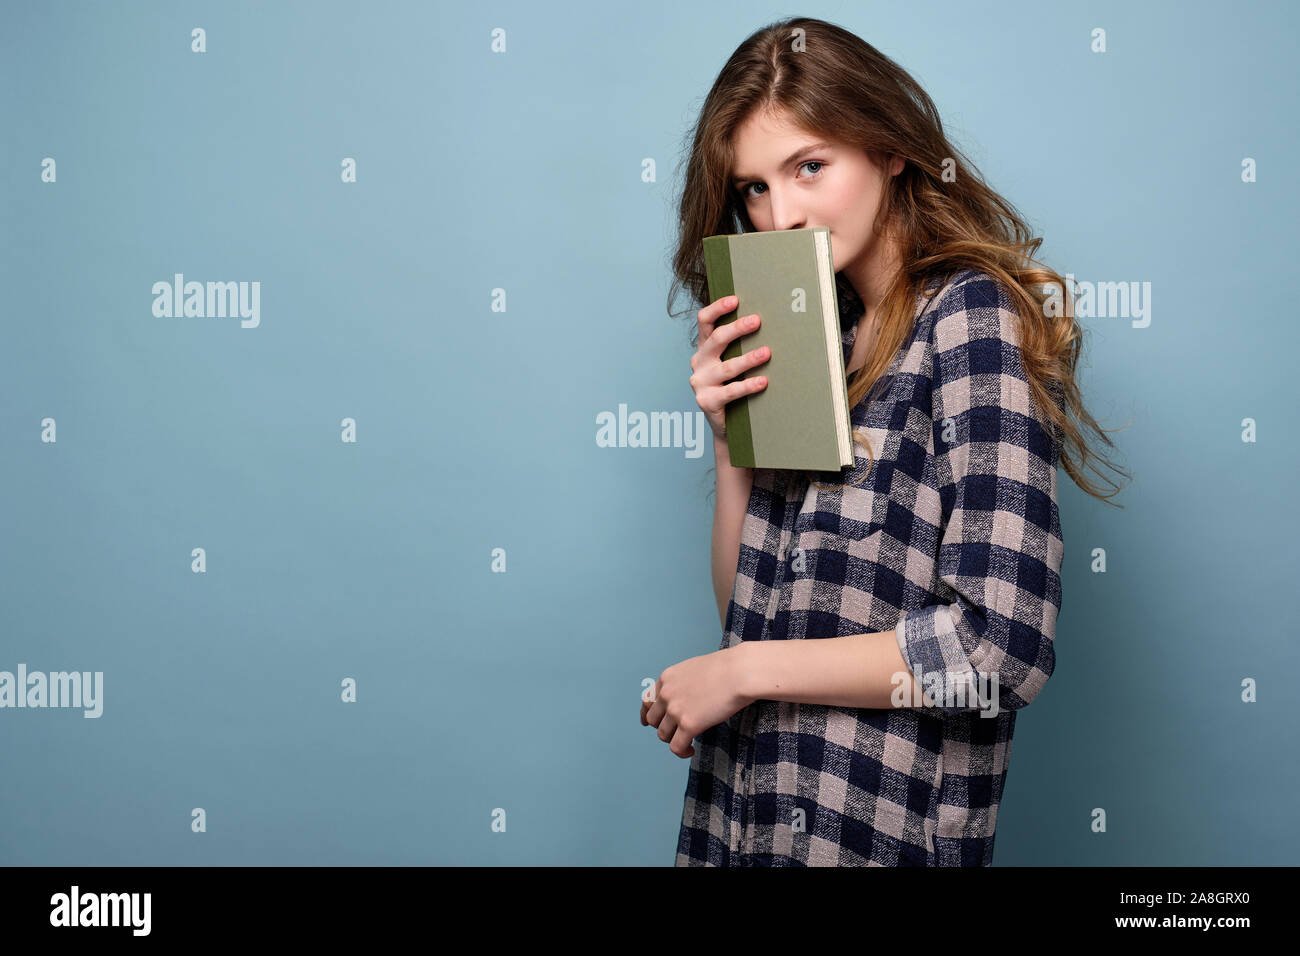 Ein Mädchen in einem Plaid Shirt steht in einer halben Umdrehung auf einem blauen Hintergrund und sieht in den Rahmen, hinter einem Buch versteckt. Horizontale Foto Stockfoto